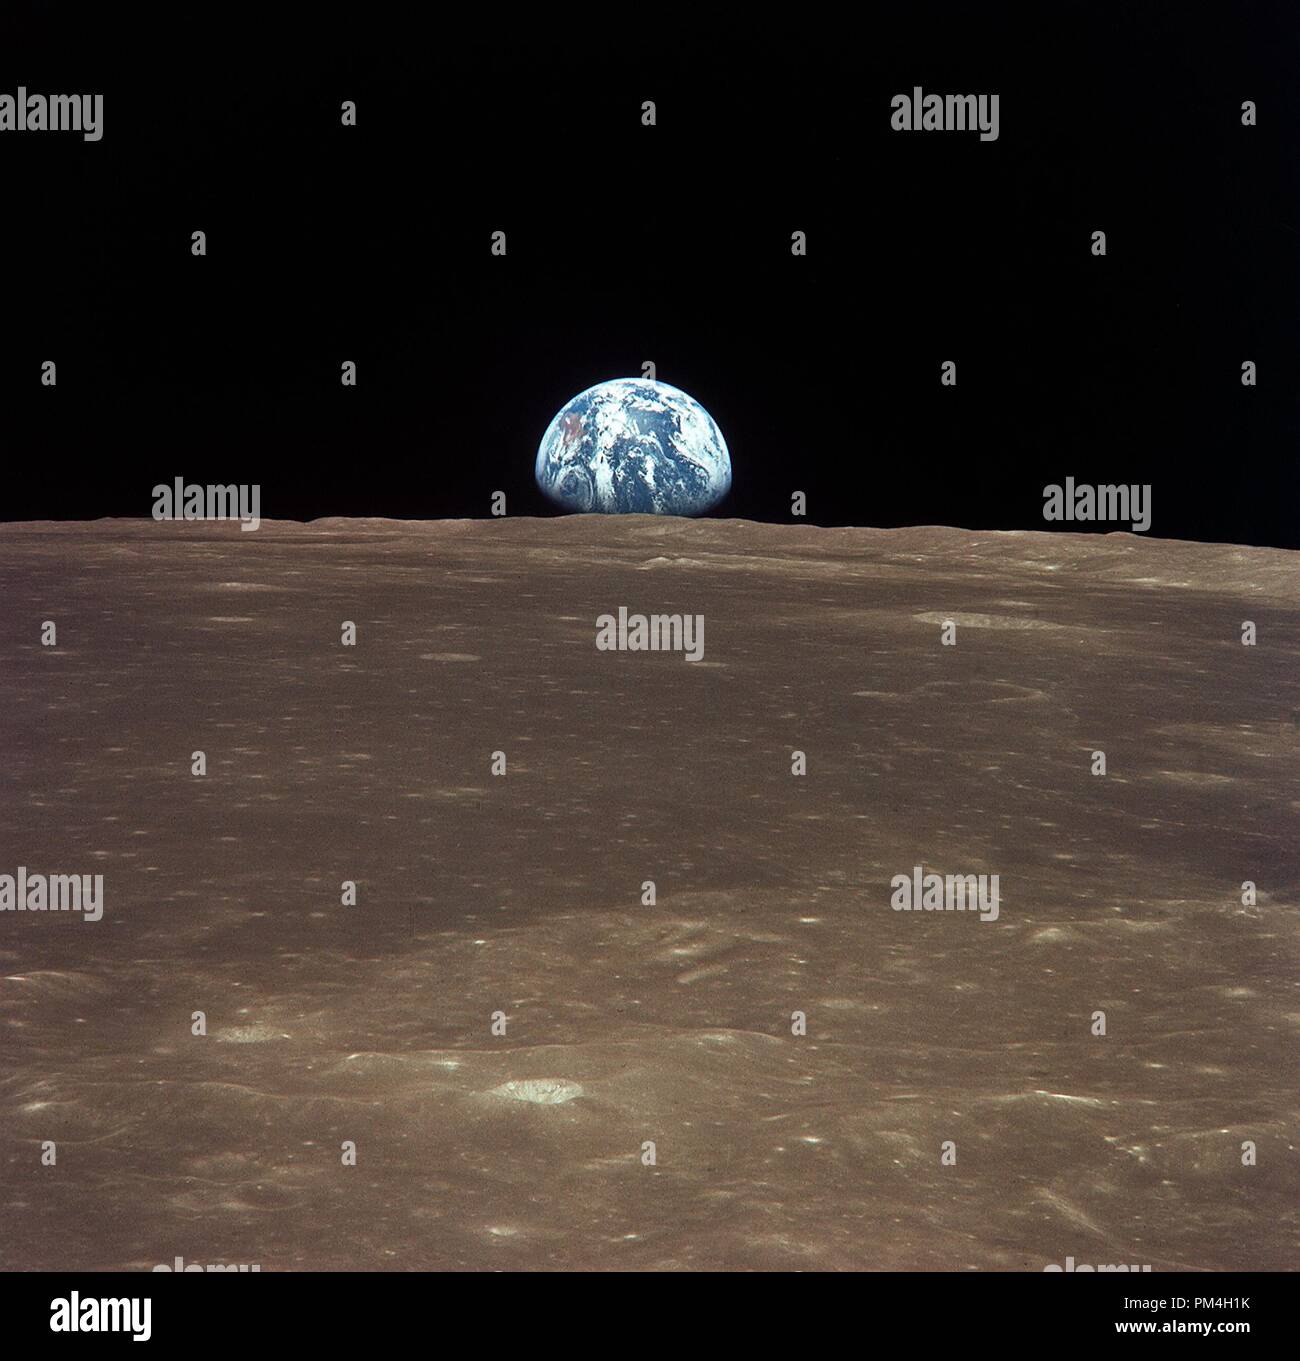 (16-24 luglio 1969) --- Questa vista dall'Apollo 11 veicolo spaziale mostra la terra che si eleva al di sopra della luna di orizzonte. Il terreno lunare è raffigurato nella zona di Smyth mare sulla nearside. Coordinate del centro del terreno sono 86 gradi di longitudine est e 3 gradi di latitudine nord. Mentre gli astronauti Neil A. Armstrong, commander, e Edwin E. Aldrin Jr., modulo lunare pilota, scese con il modulo lunare (LM) " Eagle " per esplorare il Mare della Tranquillità regione della luna, astronauta Michael Collins, il pilota del modulo di comando, è rimasto con il comando e moduli di servizio (CSM) "Columbia" in orbita lunare. Foto Stock